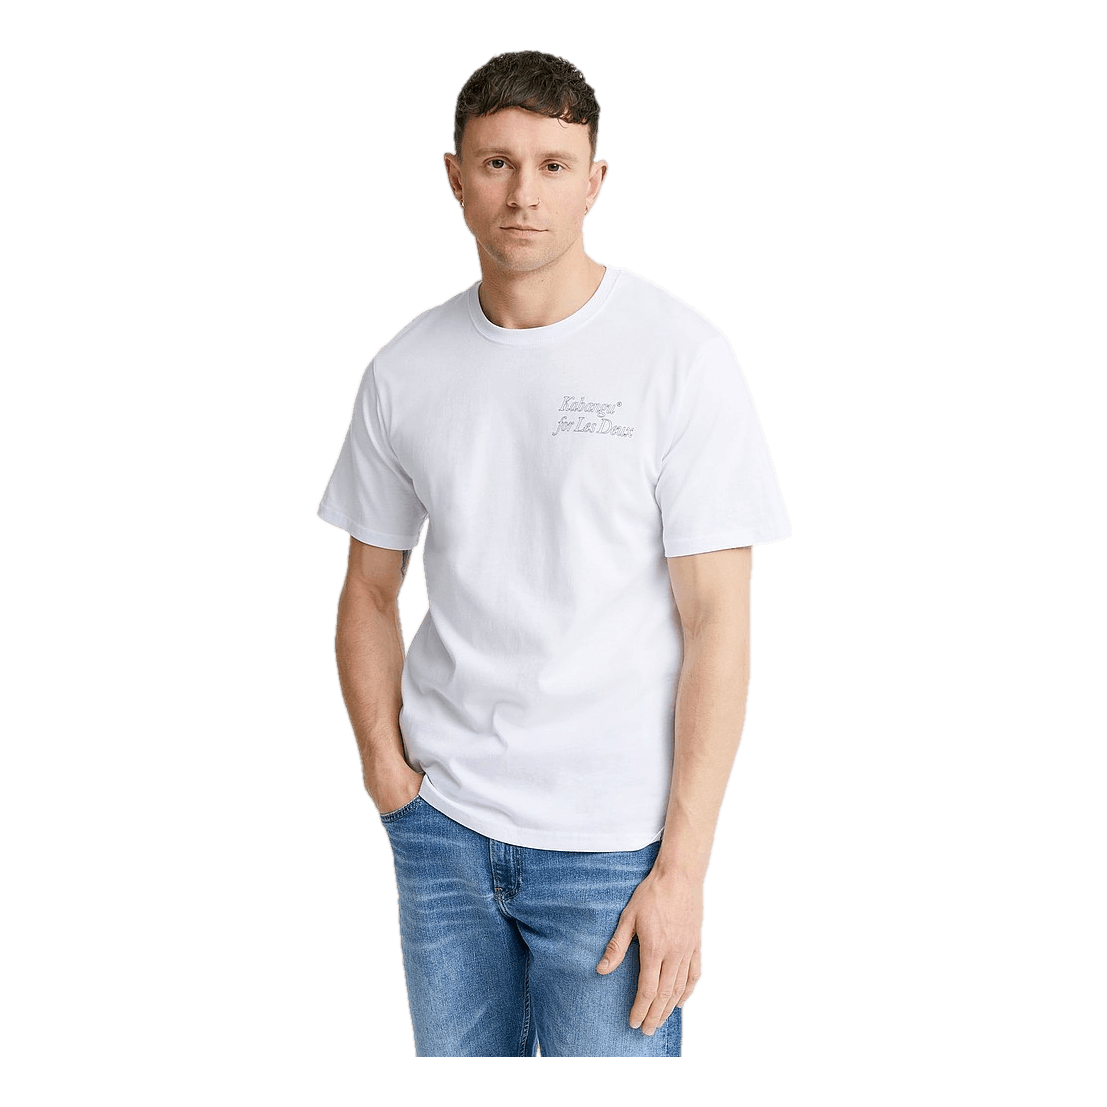 Kabangu T-shirt White/raven